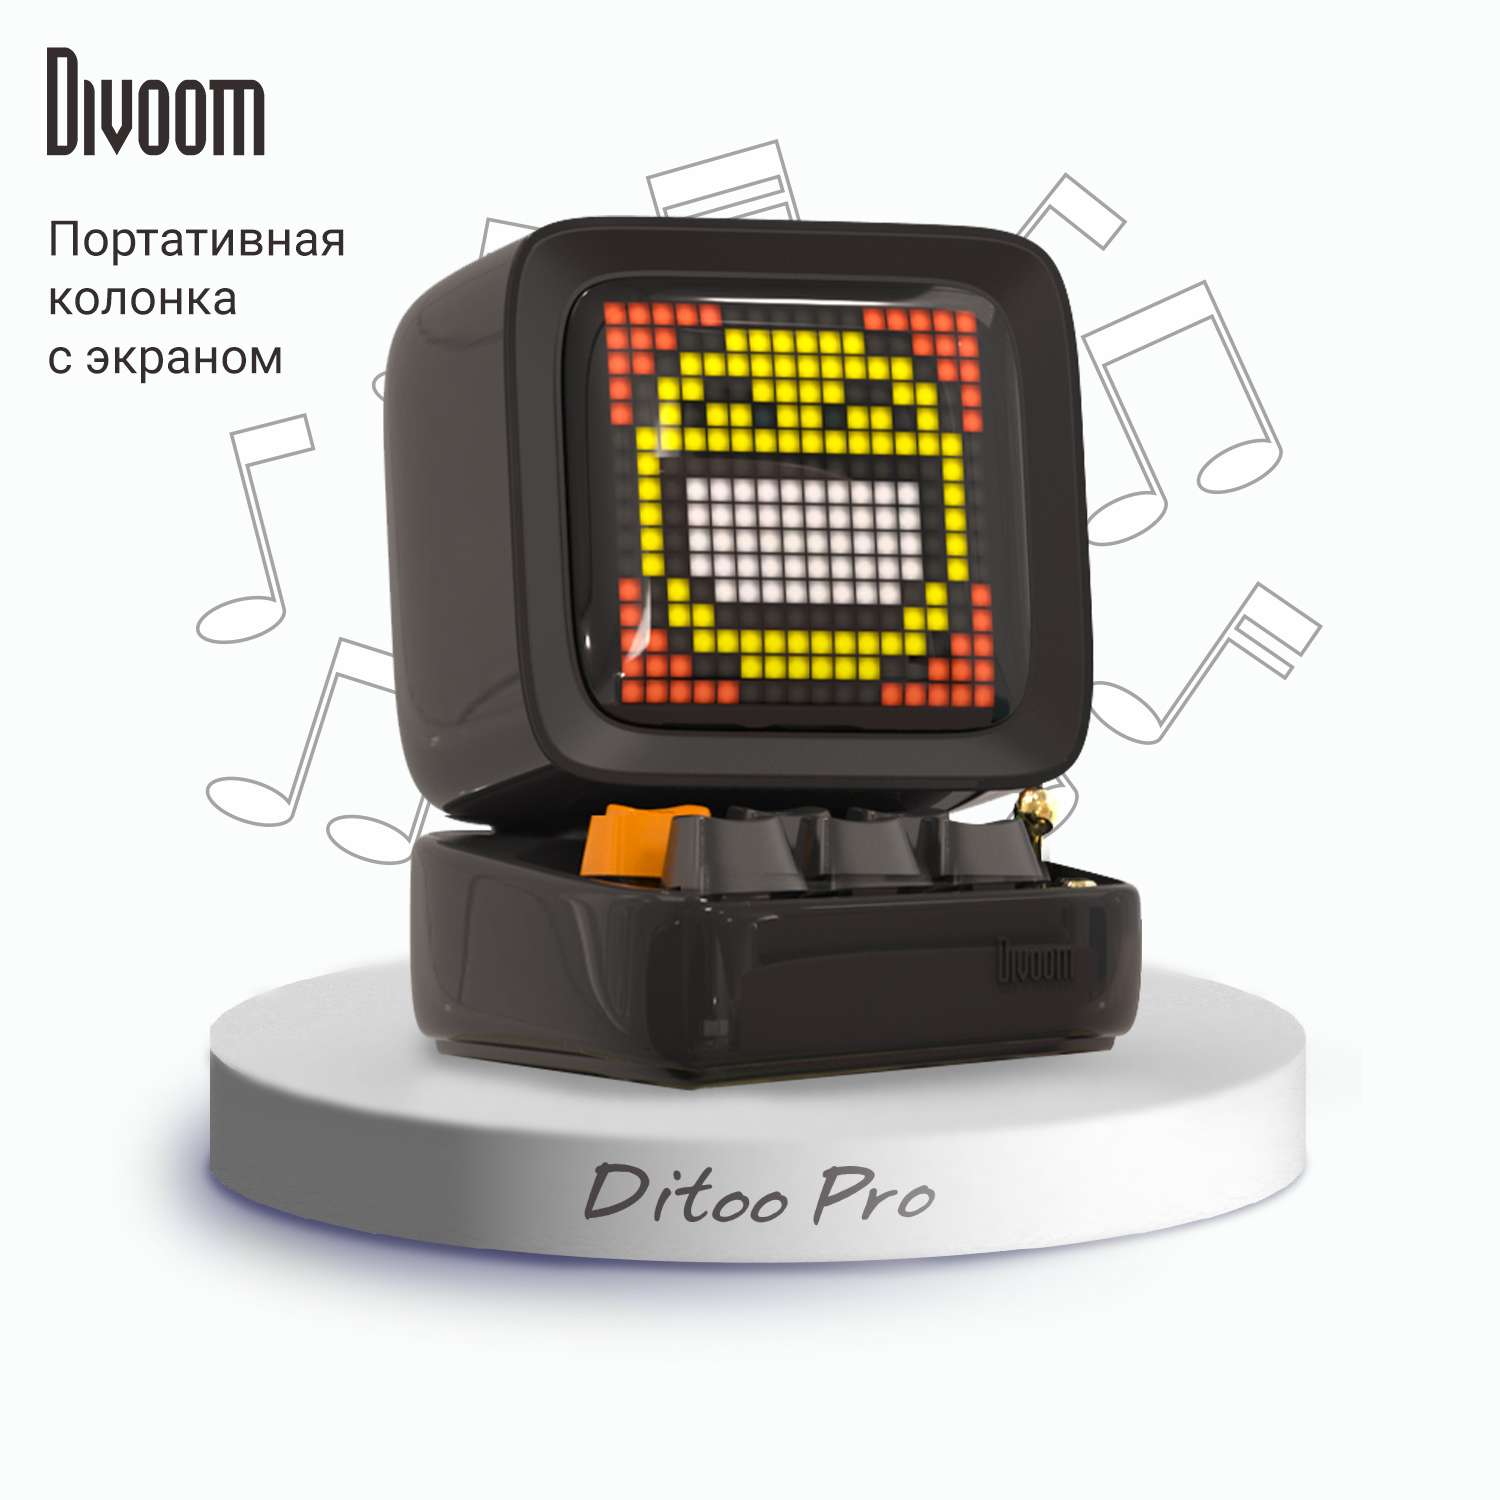 Беспроводная колонка DIVOOM портативная Ditoo Pro черная с пиксельным LED-дисплеем - фото 1